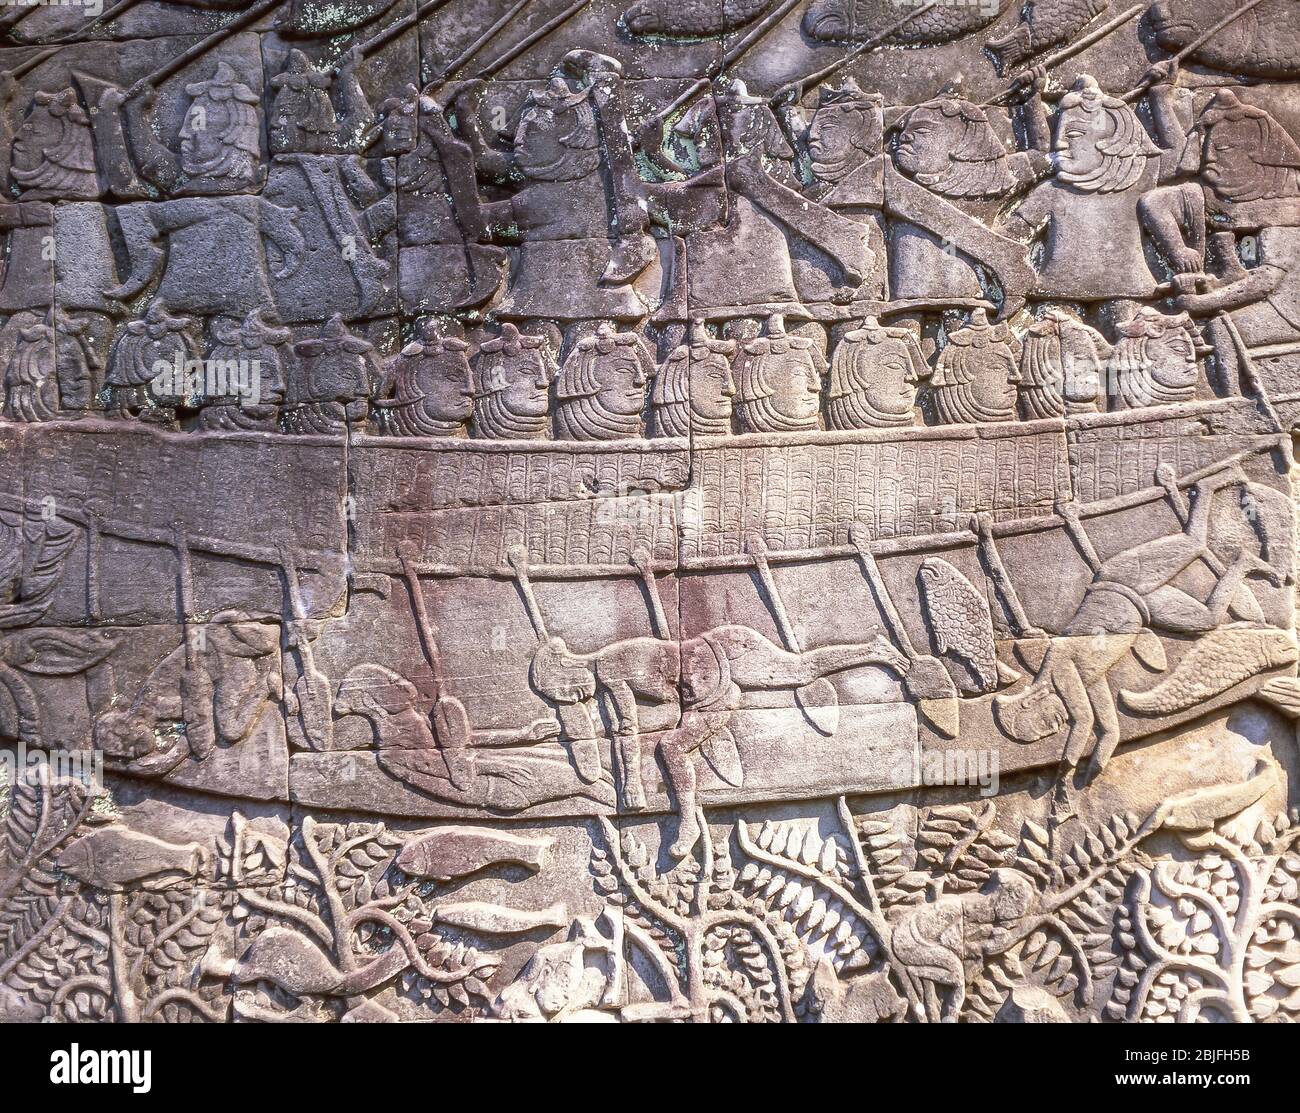 Bajo-relieve de los guerreros Cham en un barco durante la batalla, galería sur, el templo de Bayon, Ankor Thom, Siem Reap, Reino de Camboya Foto de stock